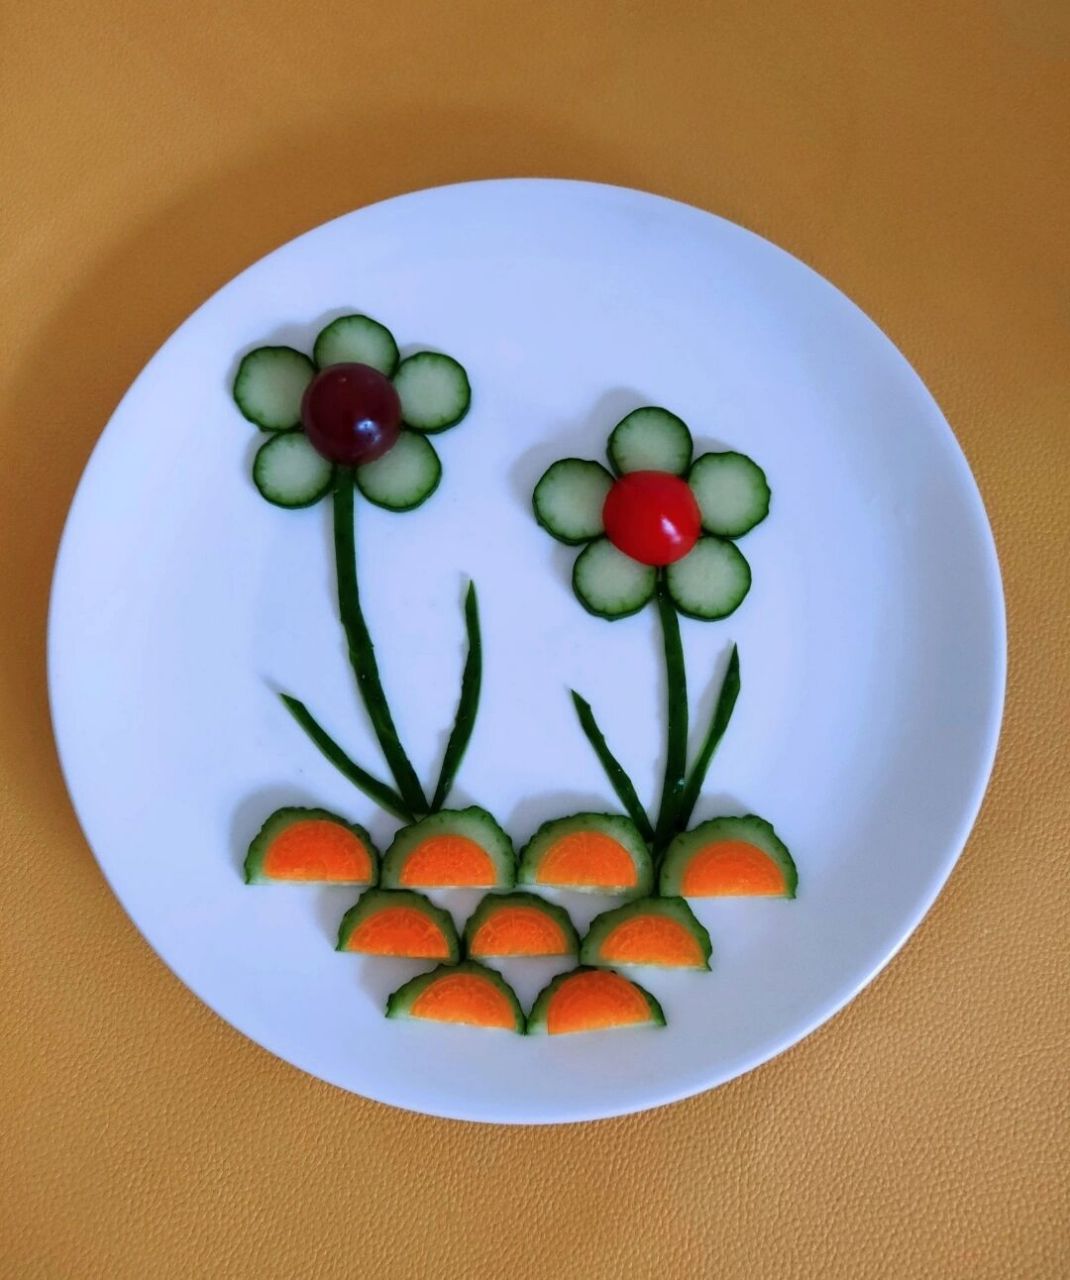 蔬菜拼盘 简单图片